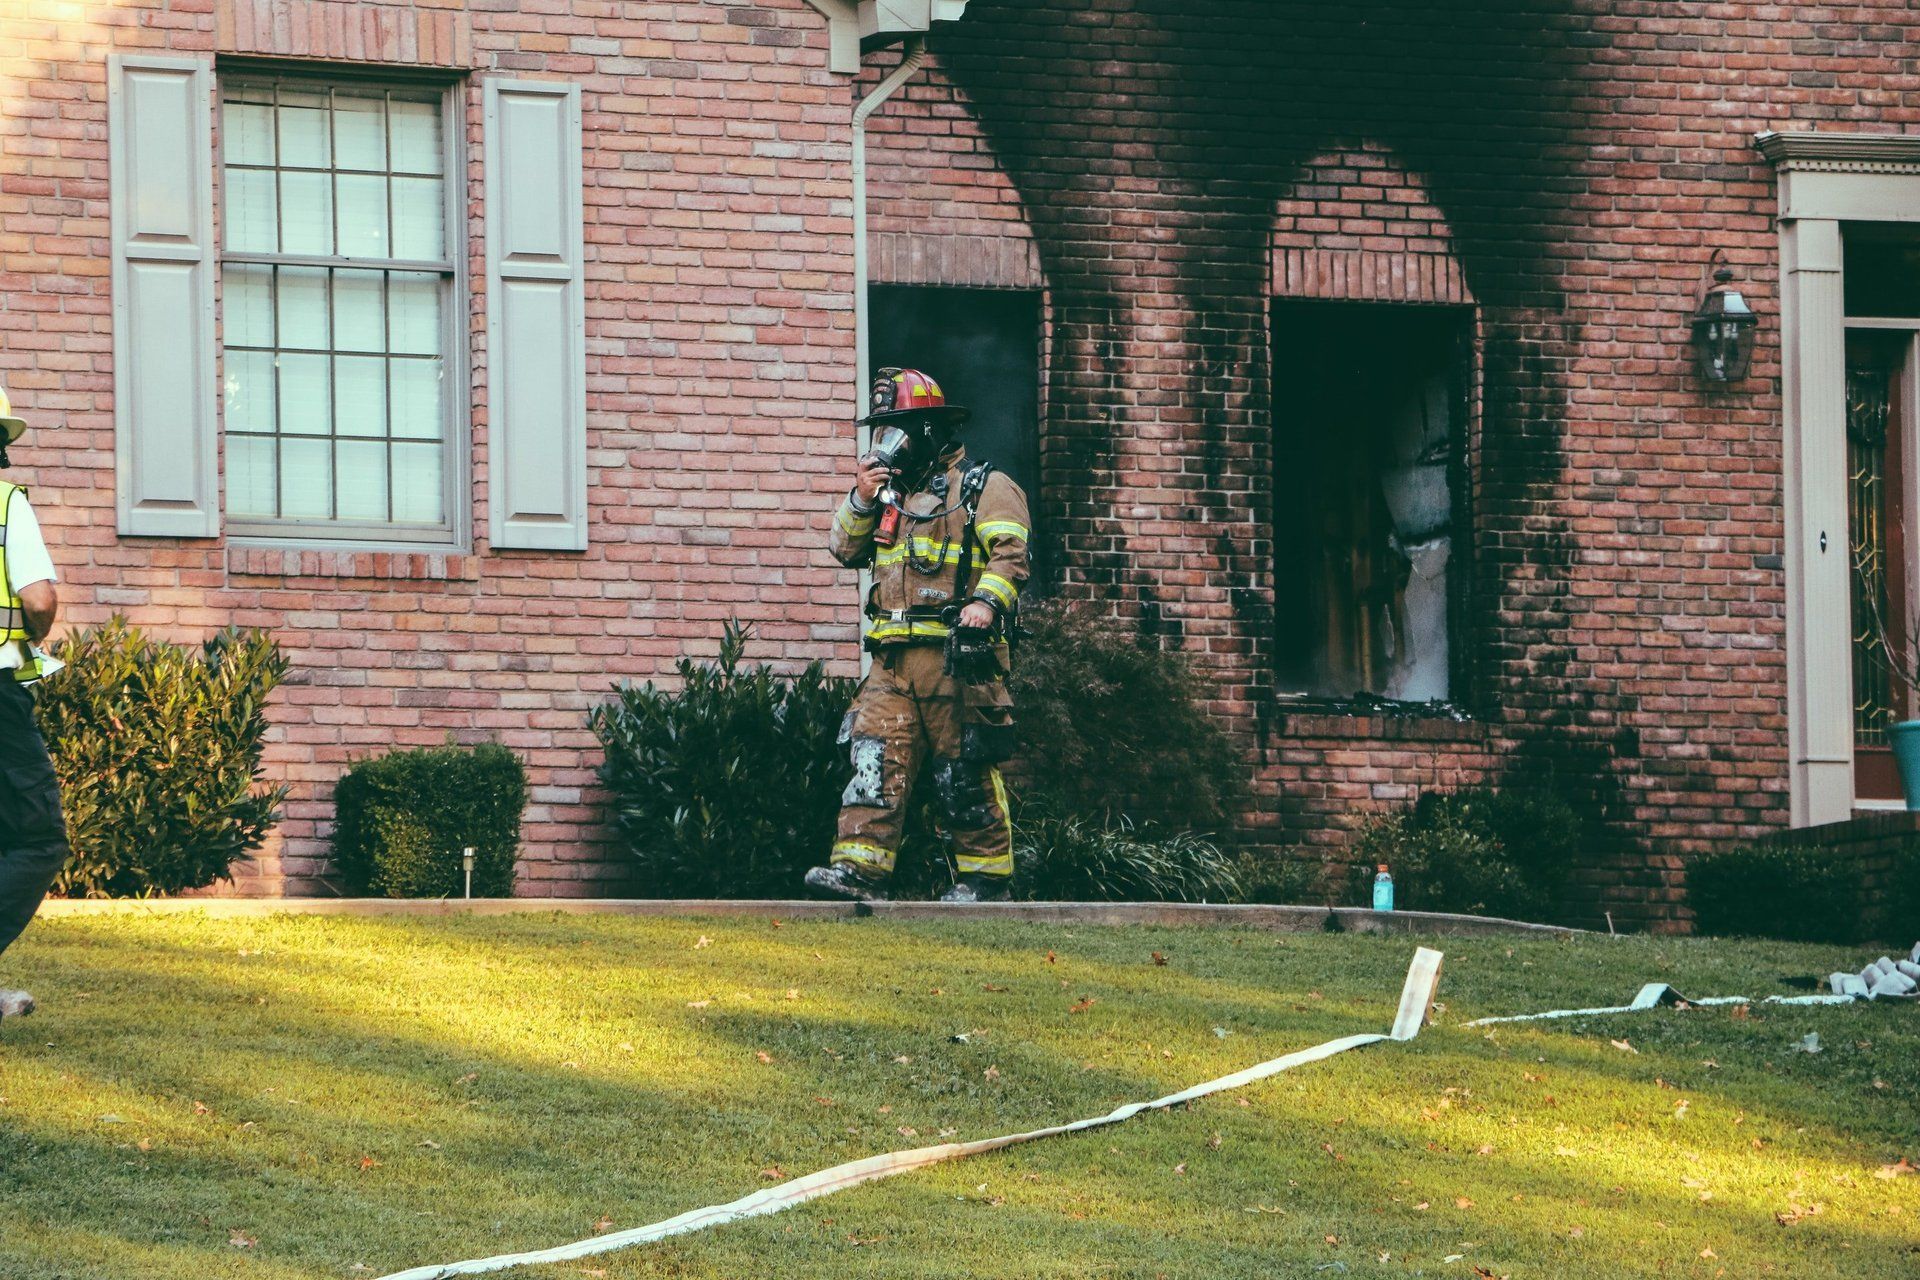 Fireman outside of burned house